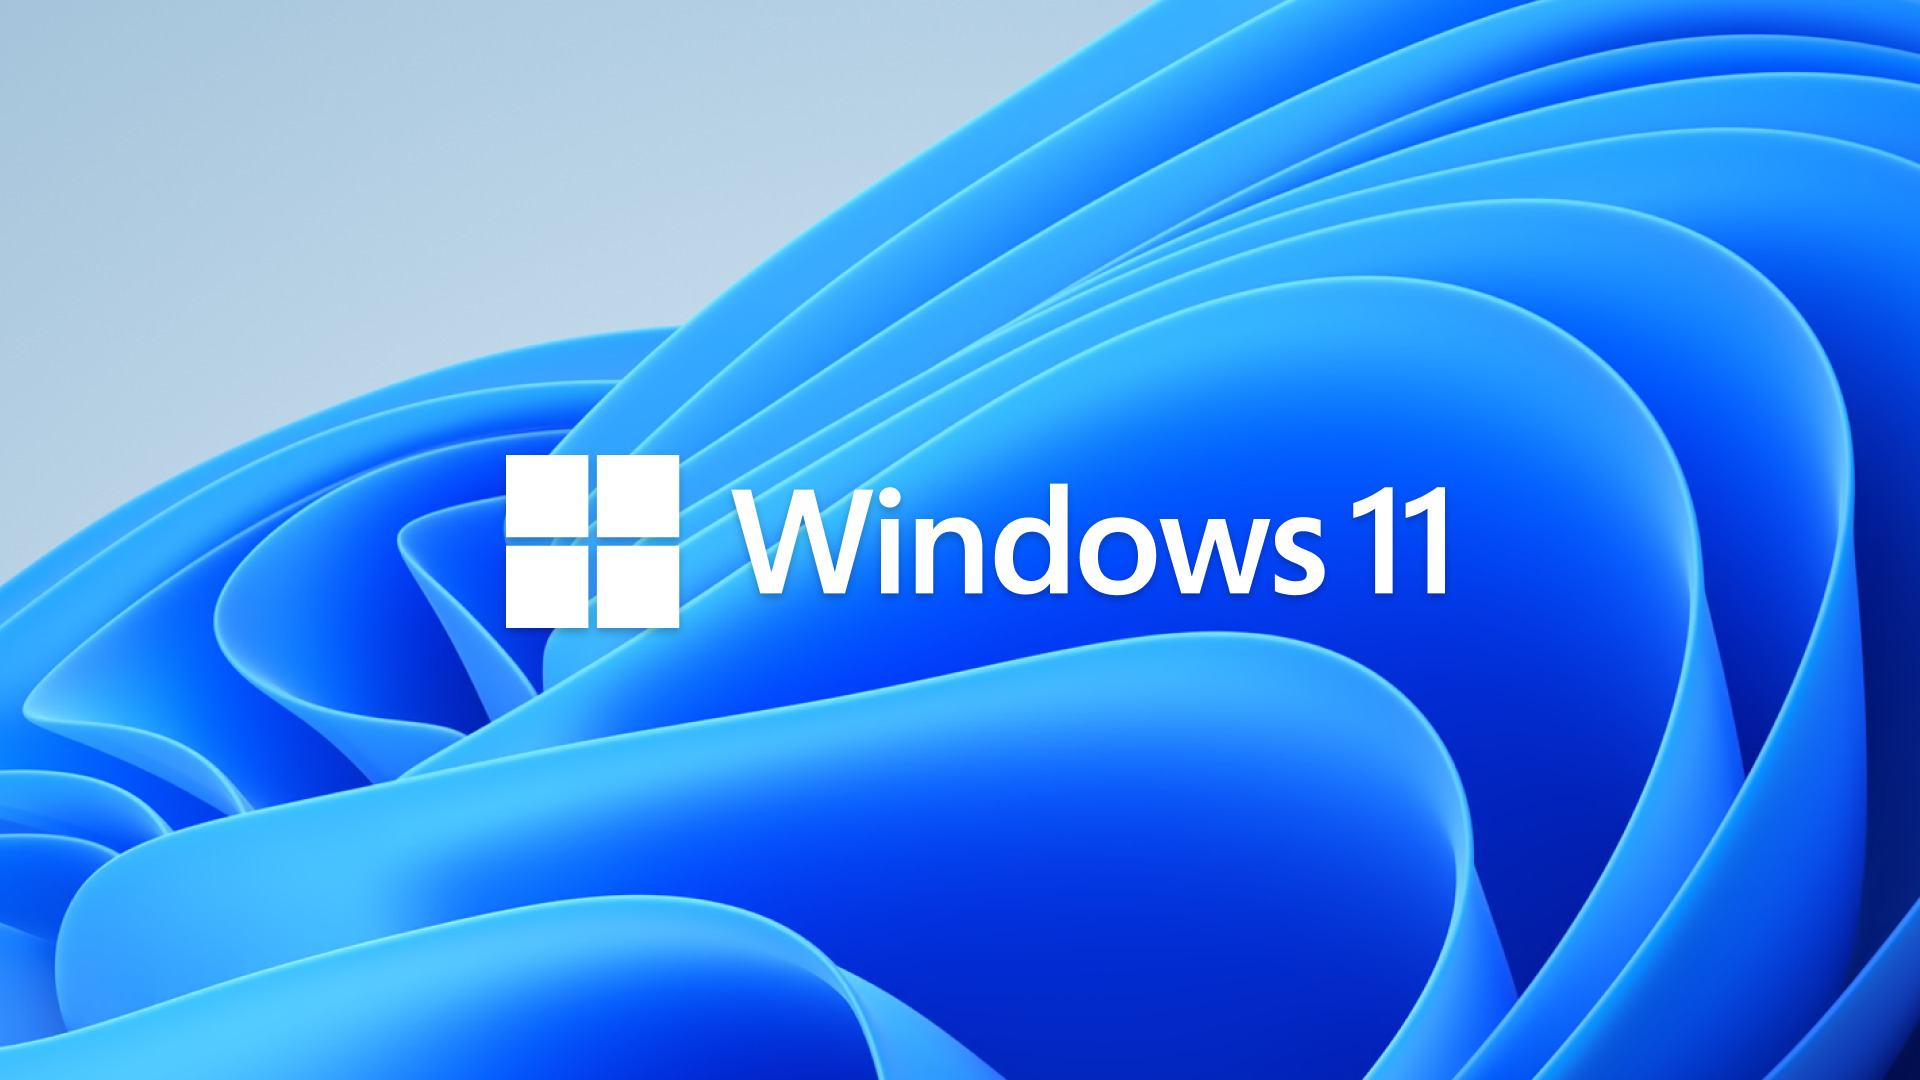 ผลสำรวจเผยปัจจุบันมีคนใช้ Windows 11 น้อยกว่า Windows XP เสียอีก!